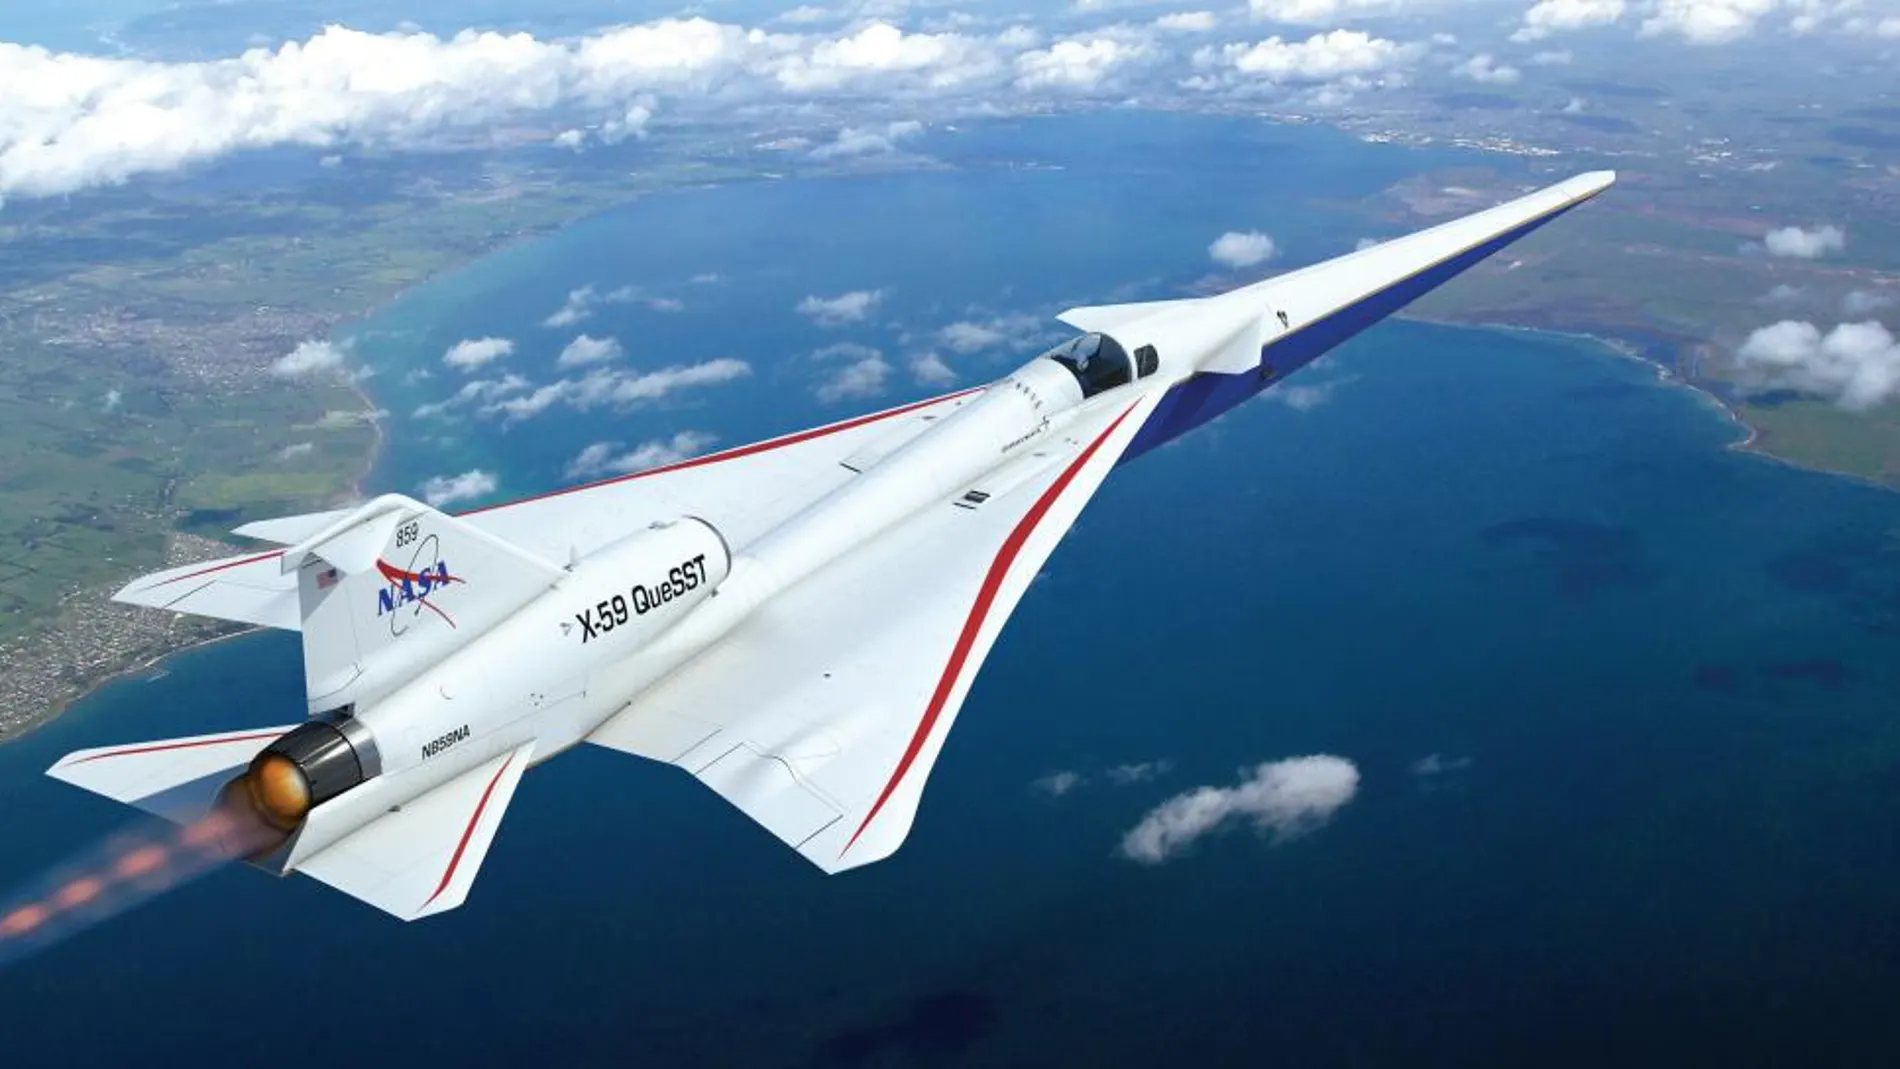 Recreación del X-59 que realizará su primer vuelo de prueba a finales de este año.